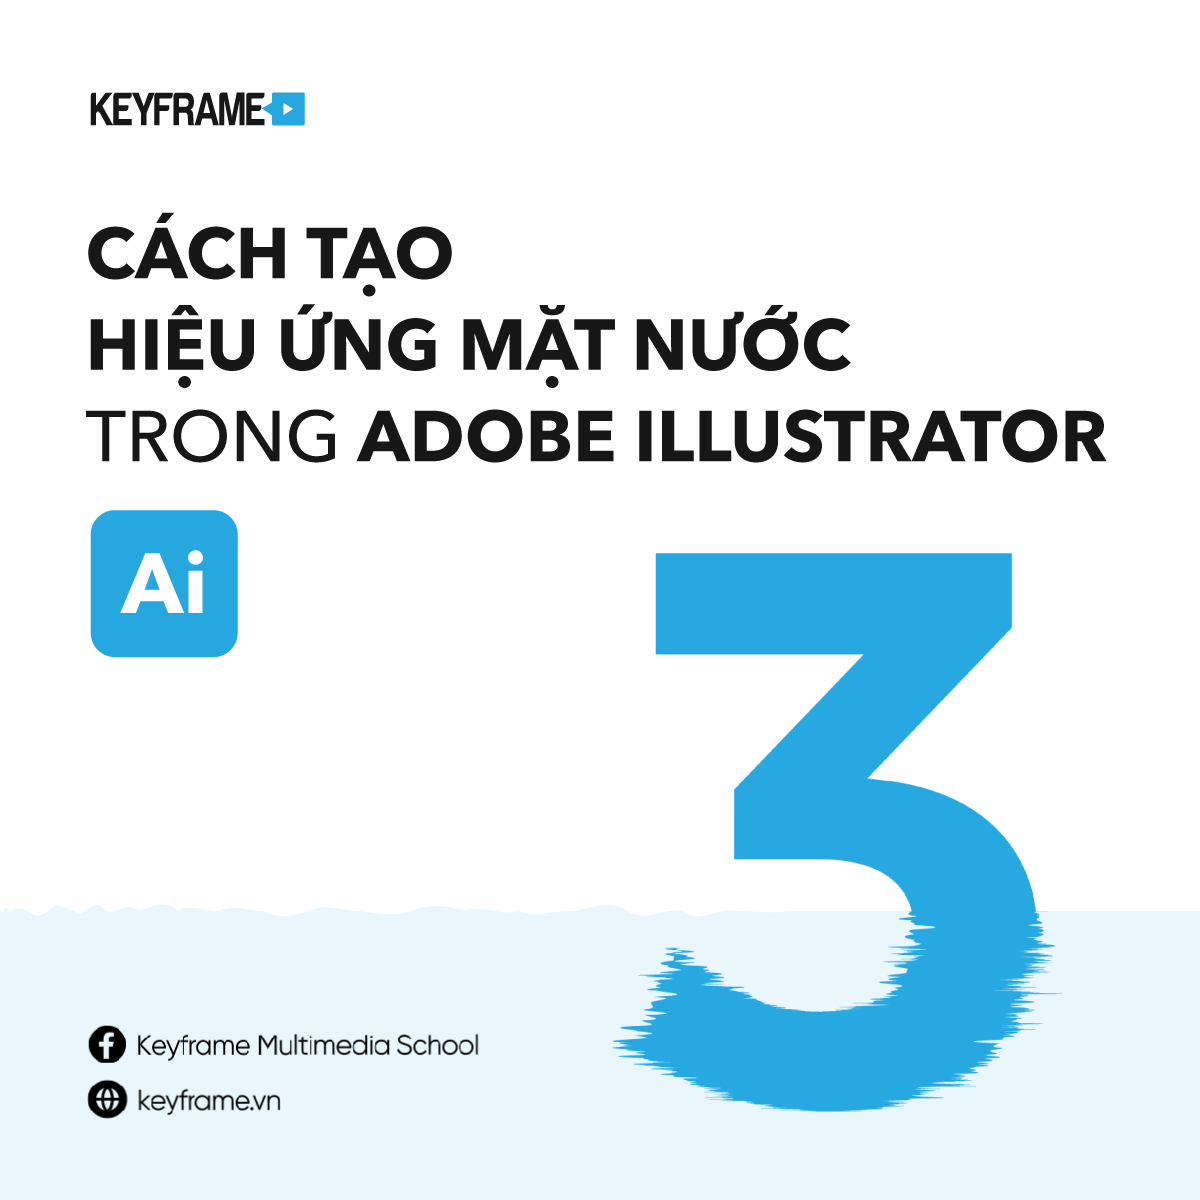 Hướng dẫn tạo hiệu ứng mặt nước trong Adobe Illustrator